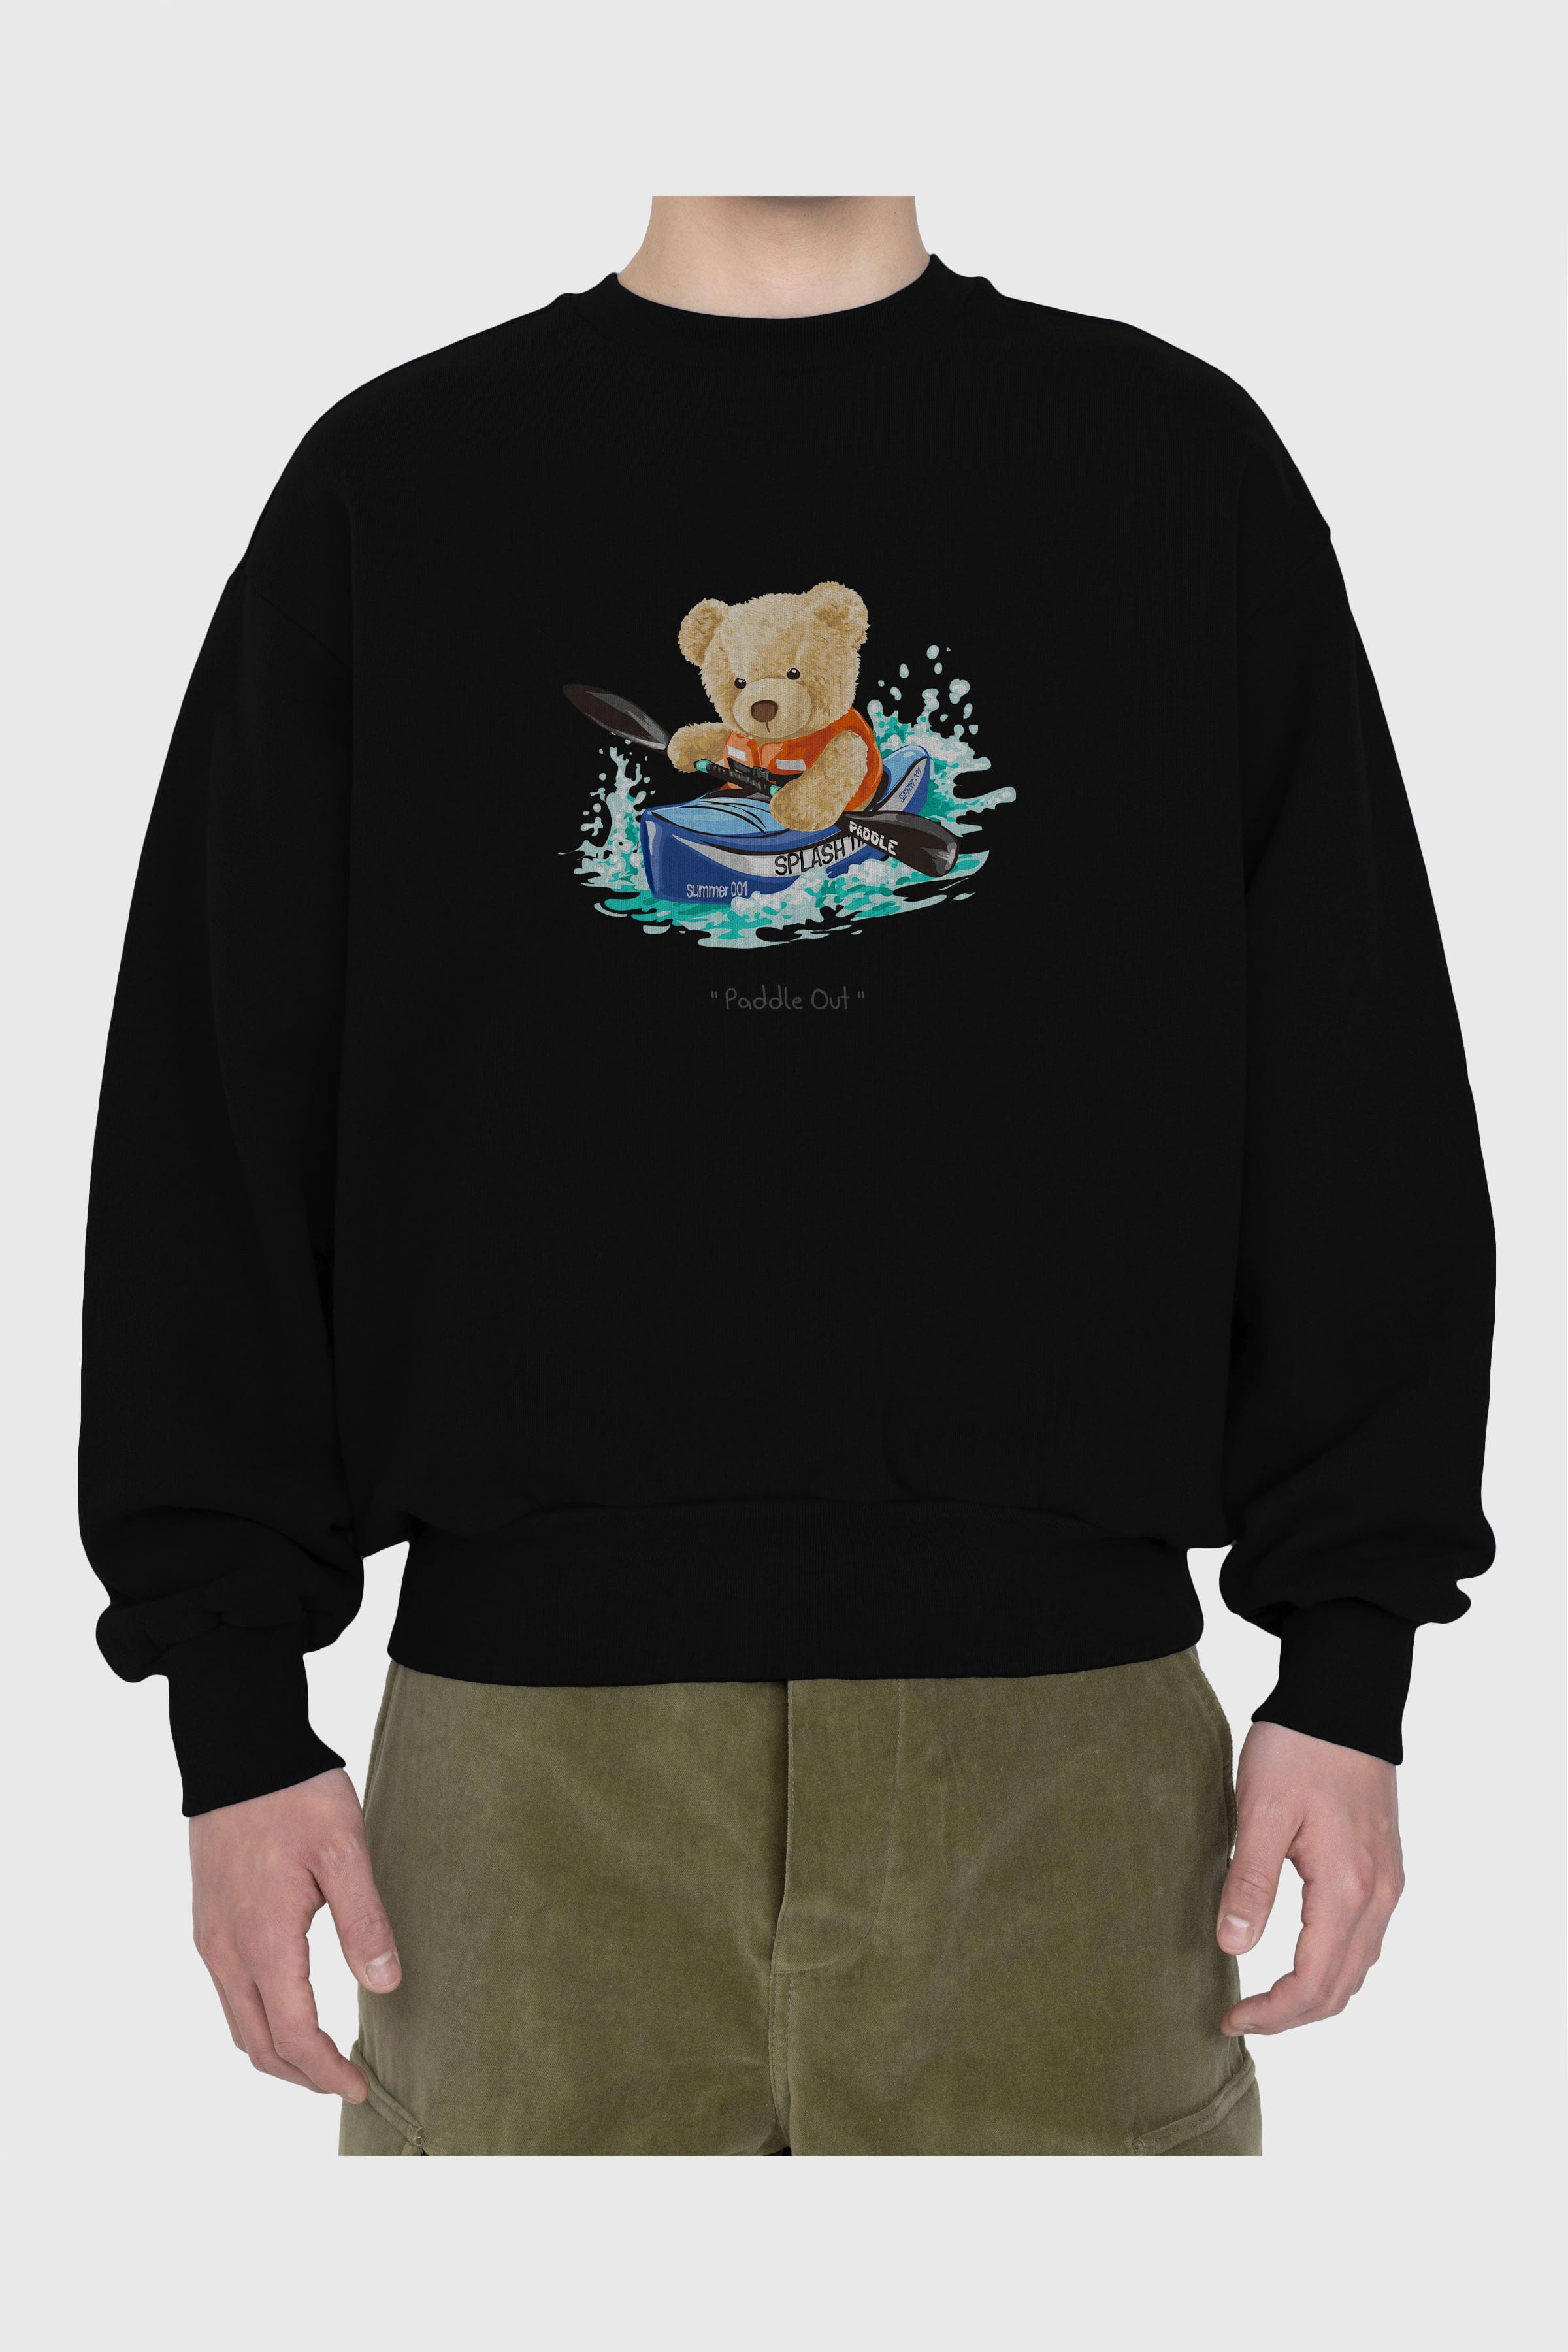 Teddy Bear Paddle Out Ön Baskılı Oversize Sweatshirt Erkek Kadın Unisex